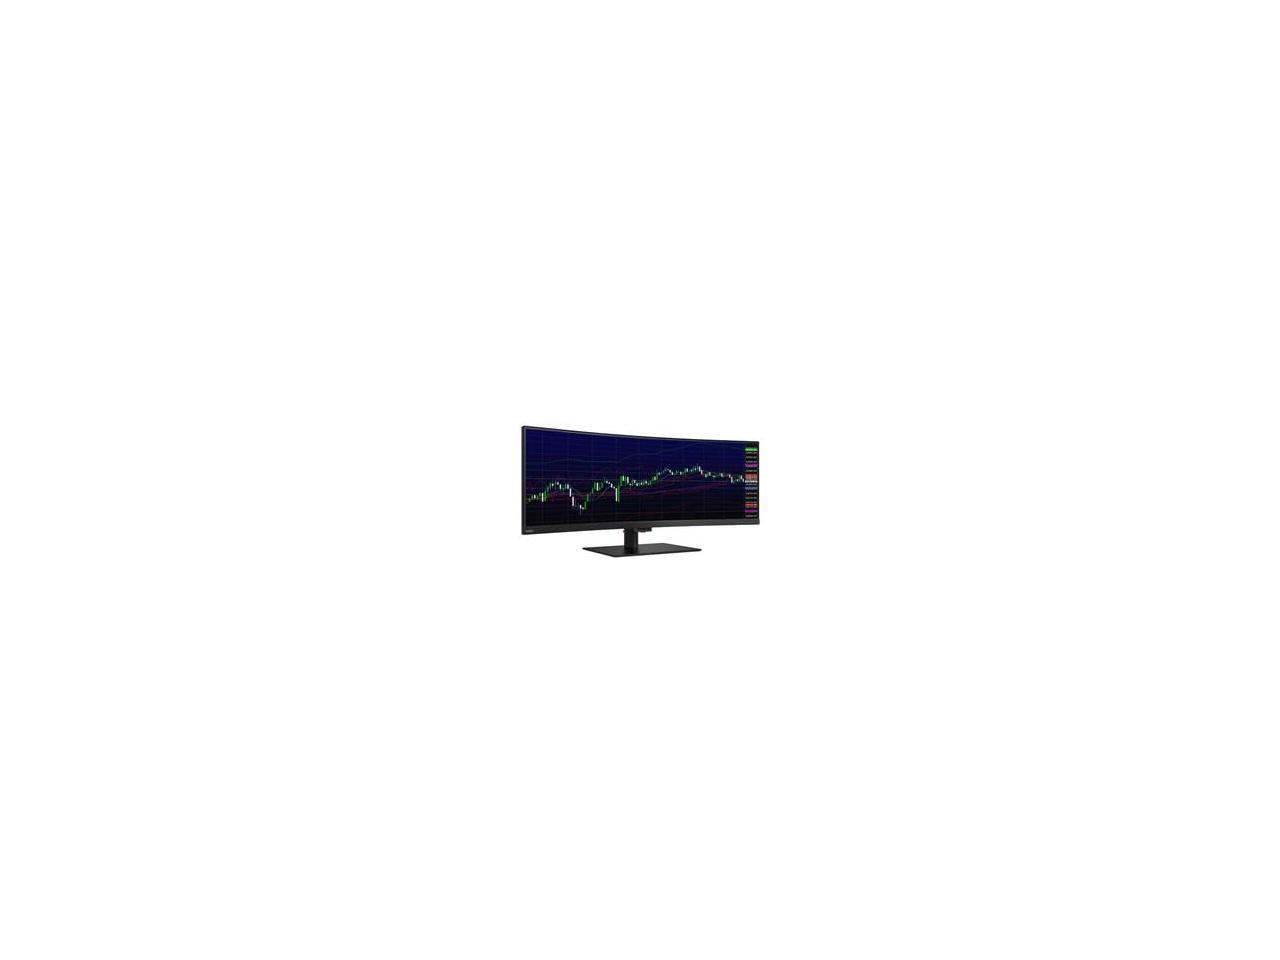 Lenovo ThinkVision P44w-10 43.4" WQUXGA WLED LCD Monitor - 32:10 - Raven Black - 61D5RAR1US